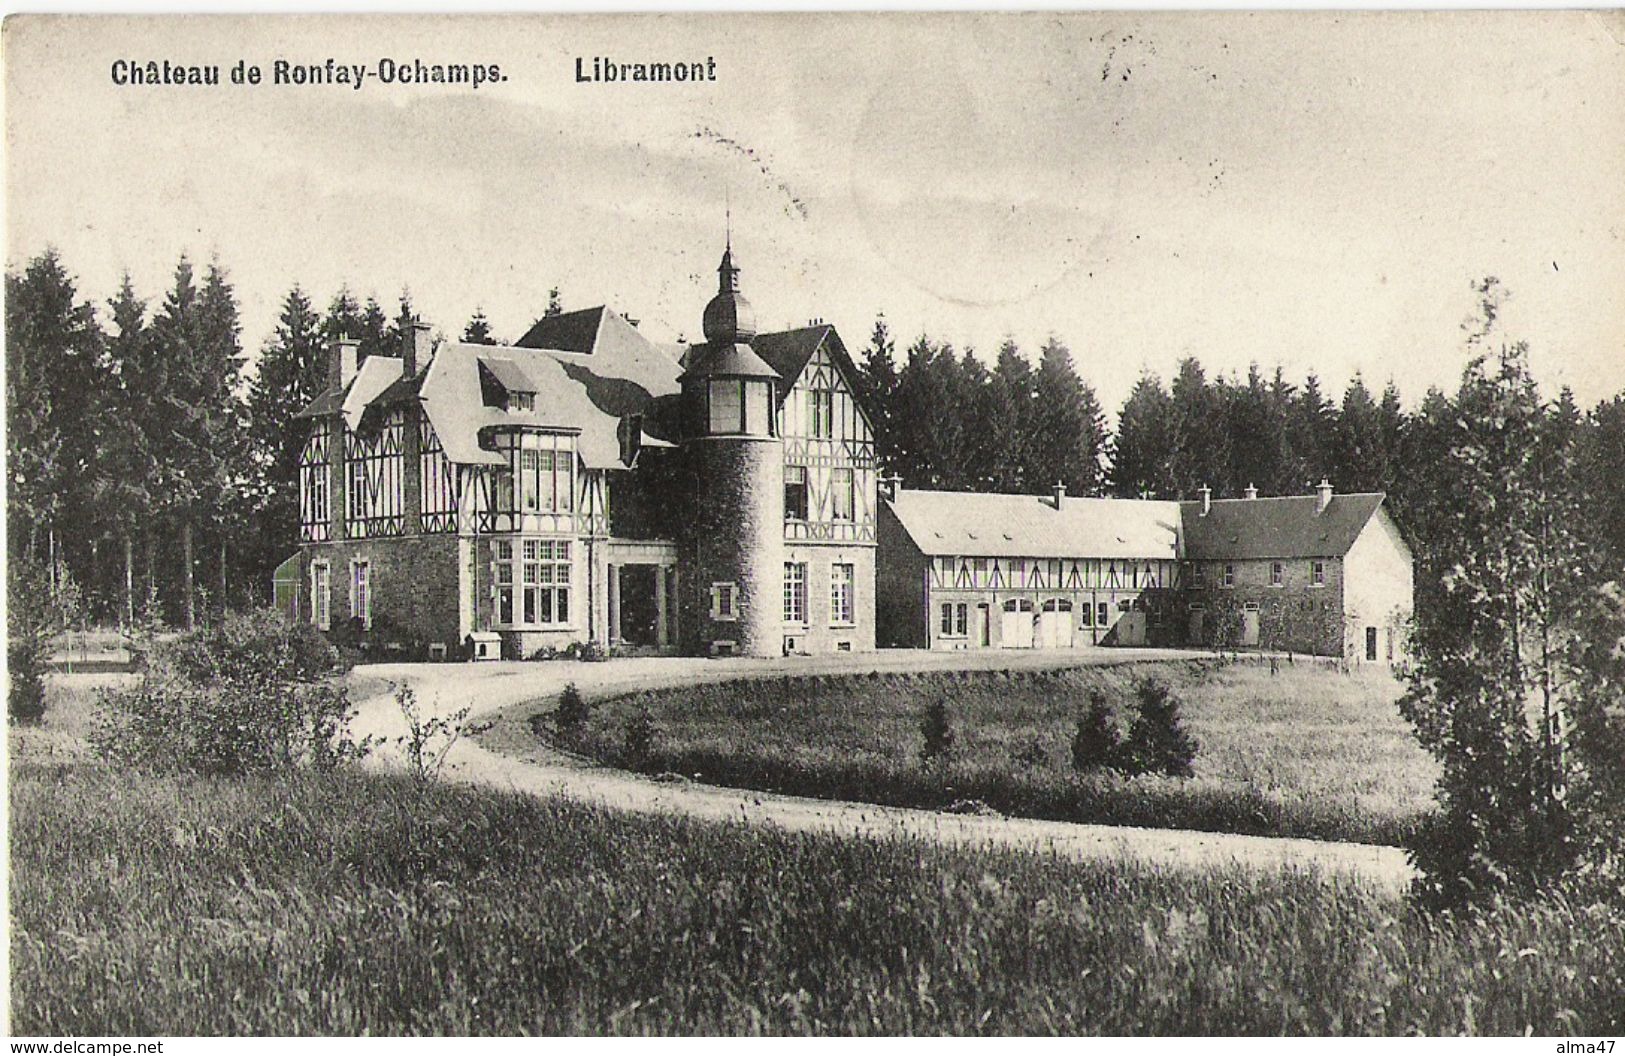 Ochamps - Libramont - Château De Ronfay - Circulé 1910 - Impr. Pinson-Croix, Libramont - SUPER - Libin